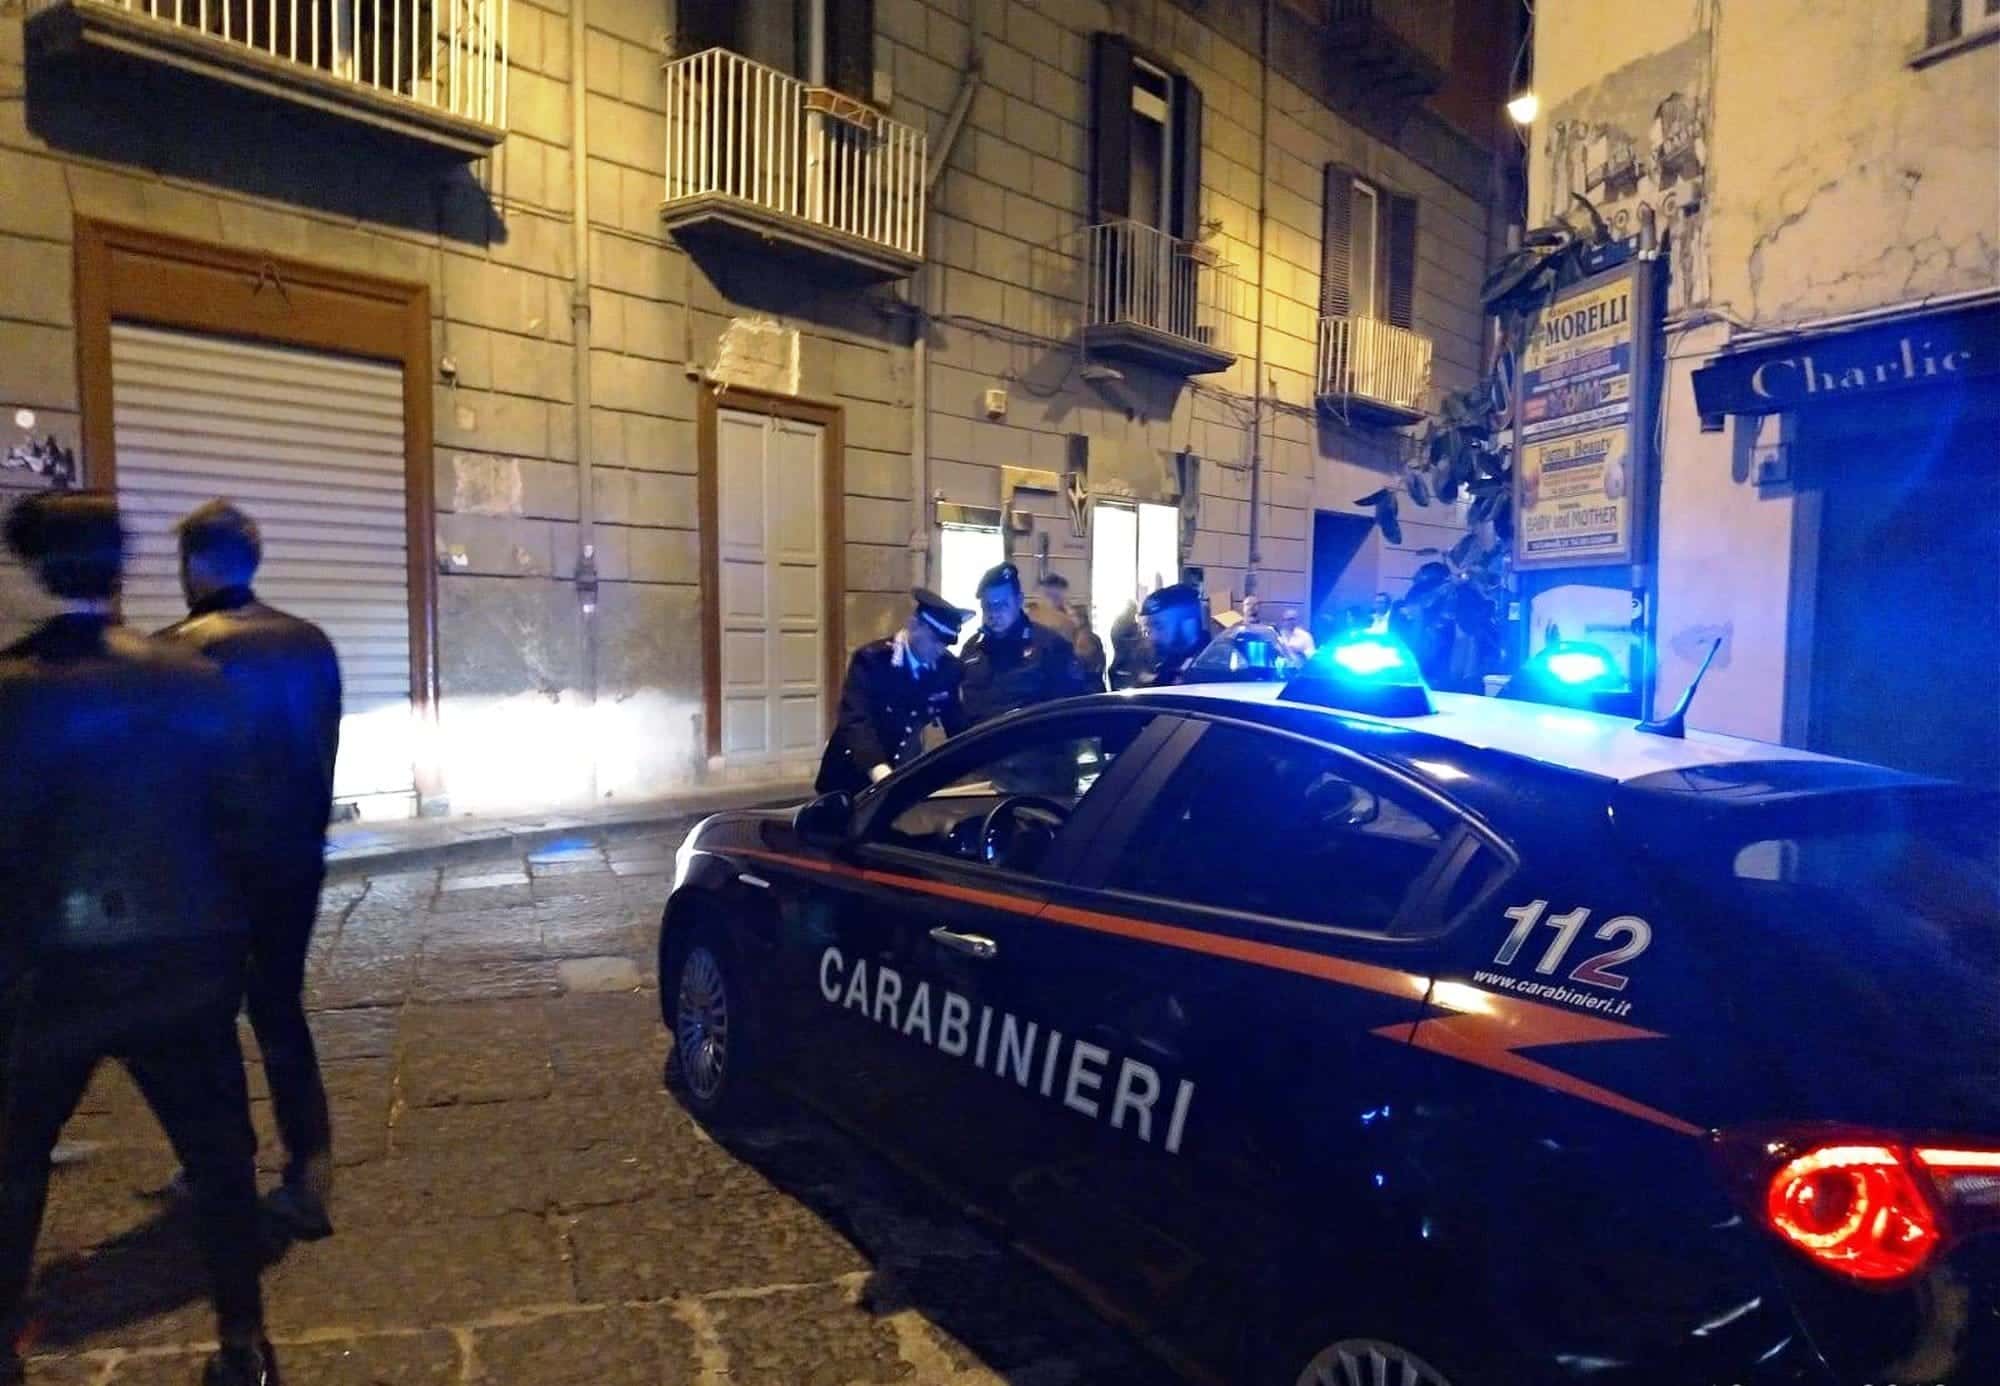 Mbi dy milionë € pasuri/ Shkatërrohen dy grupet kriminale shqiptare në Itali